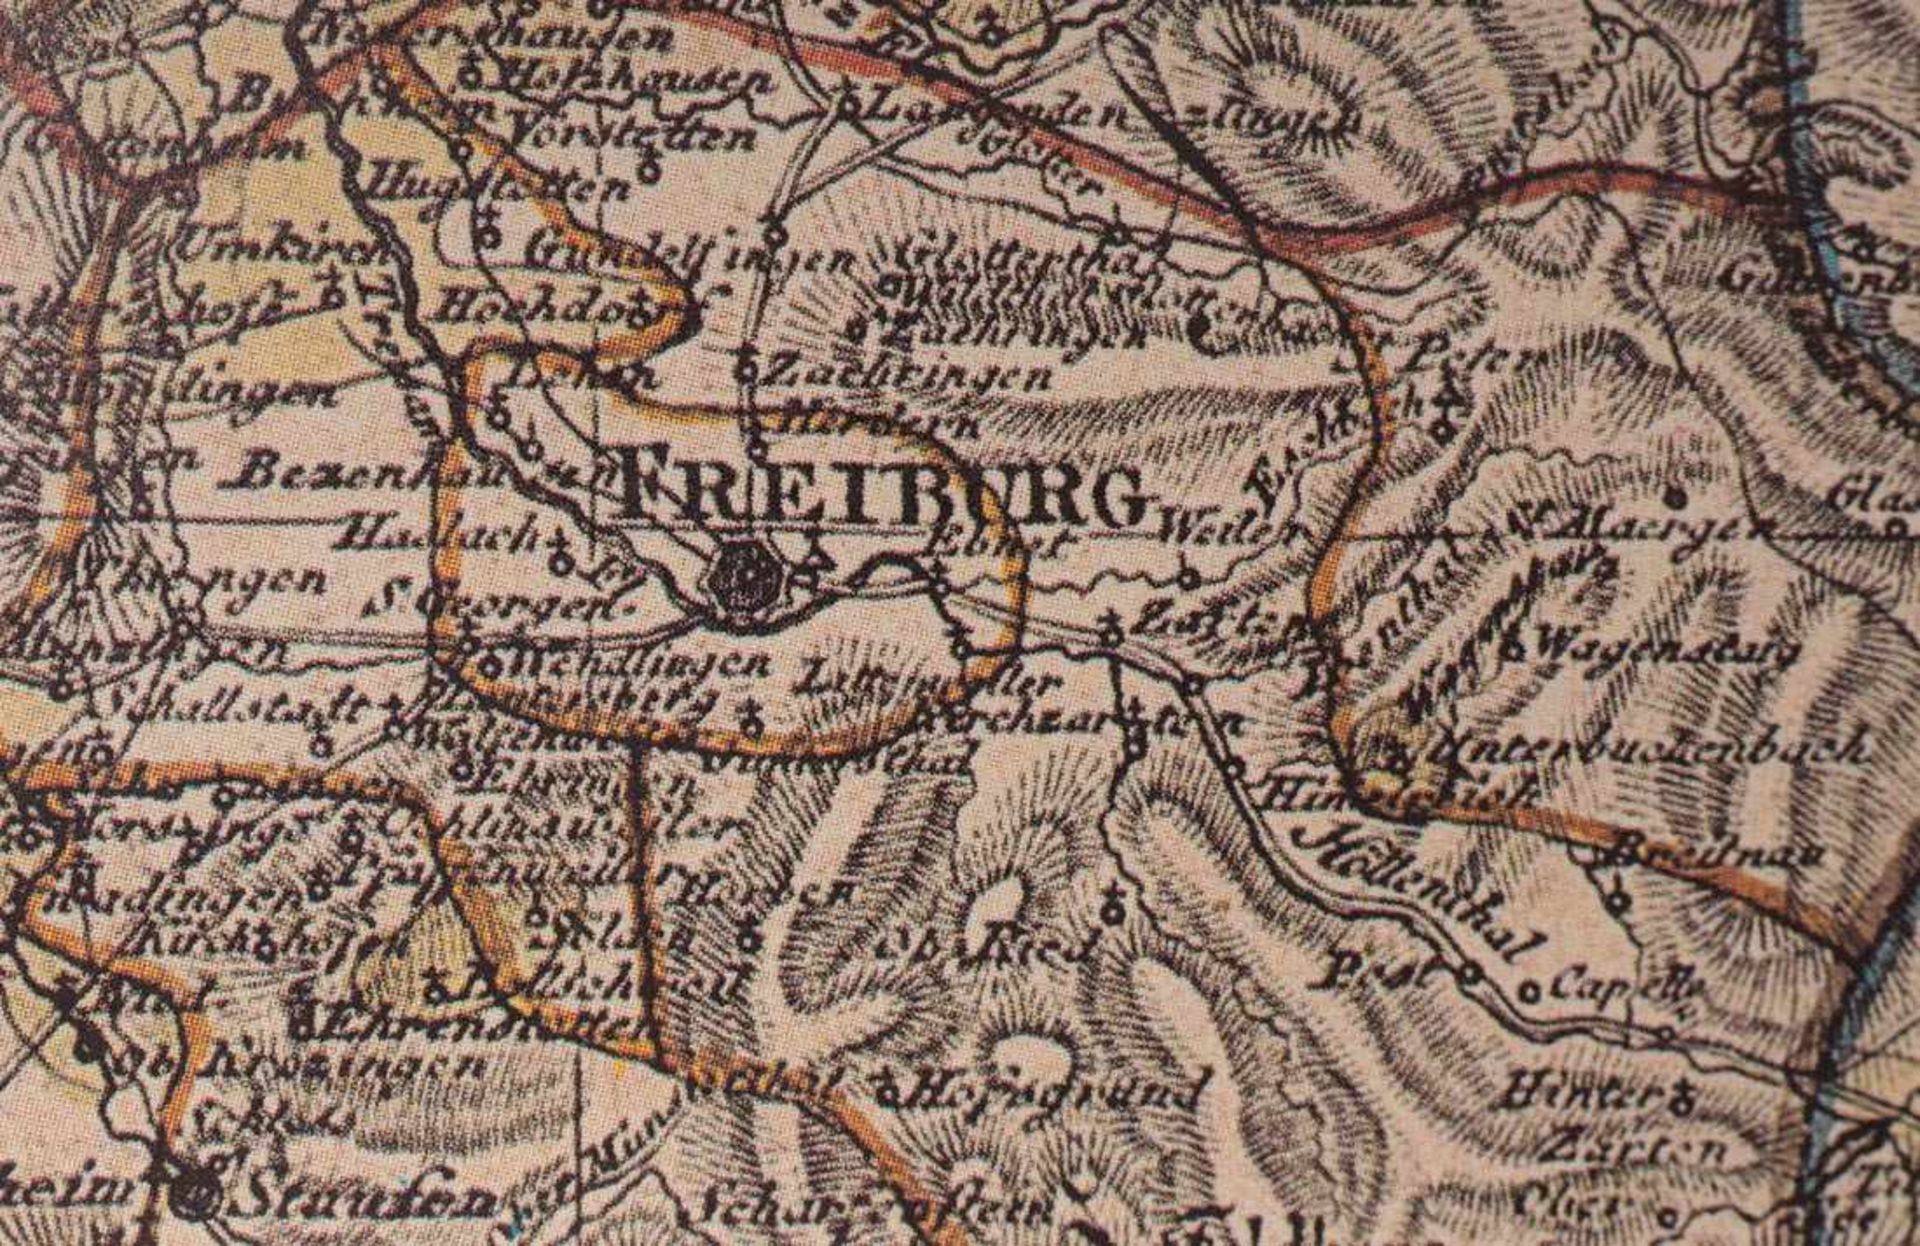 Landkarte des Großherzogtums Baden, Tulla, 1812 Nachdruck von 1988. - Image 3 of 5